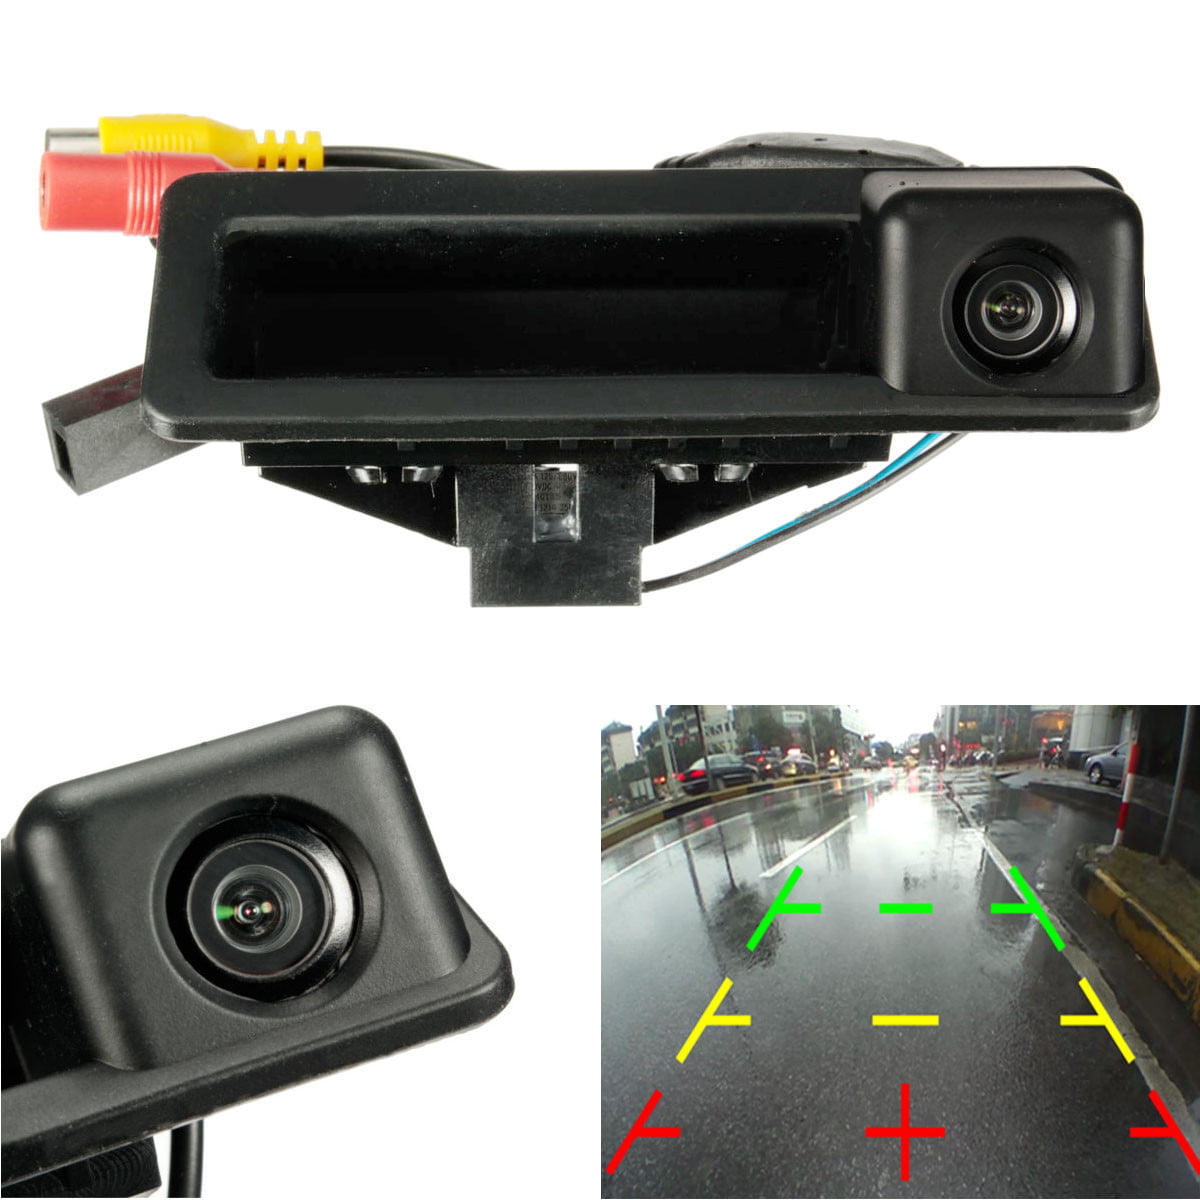 Rear View Monitors/Cams & Kits Consumer Electronics CCD